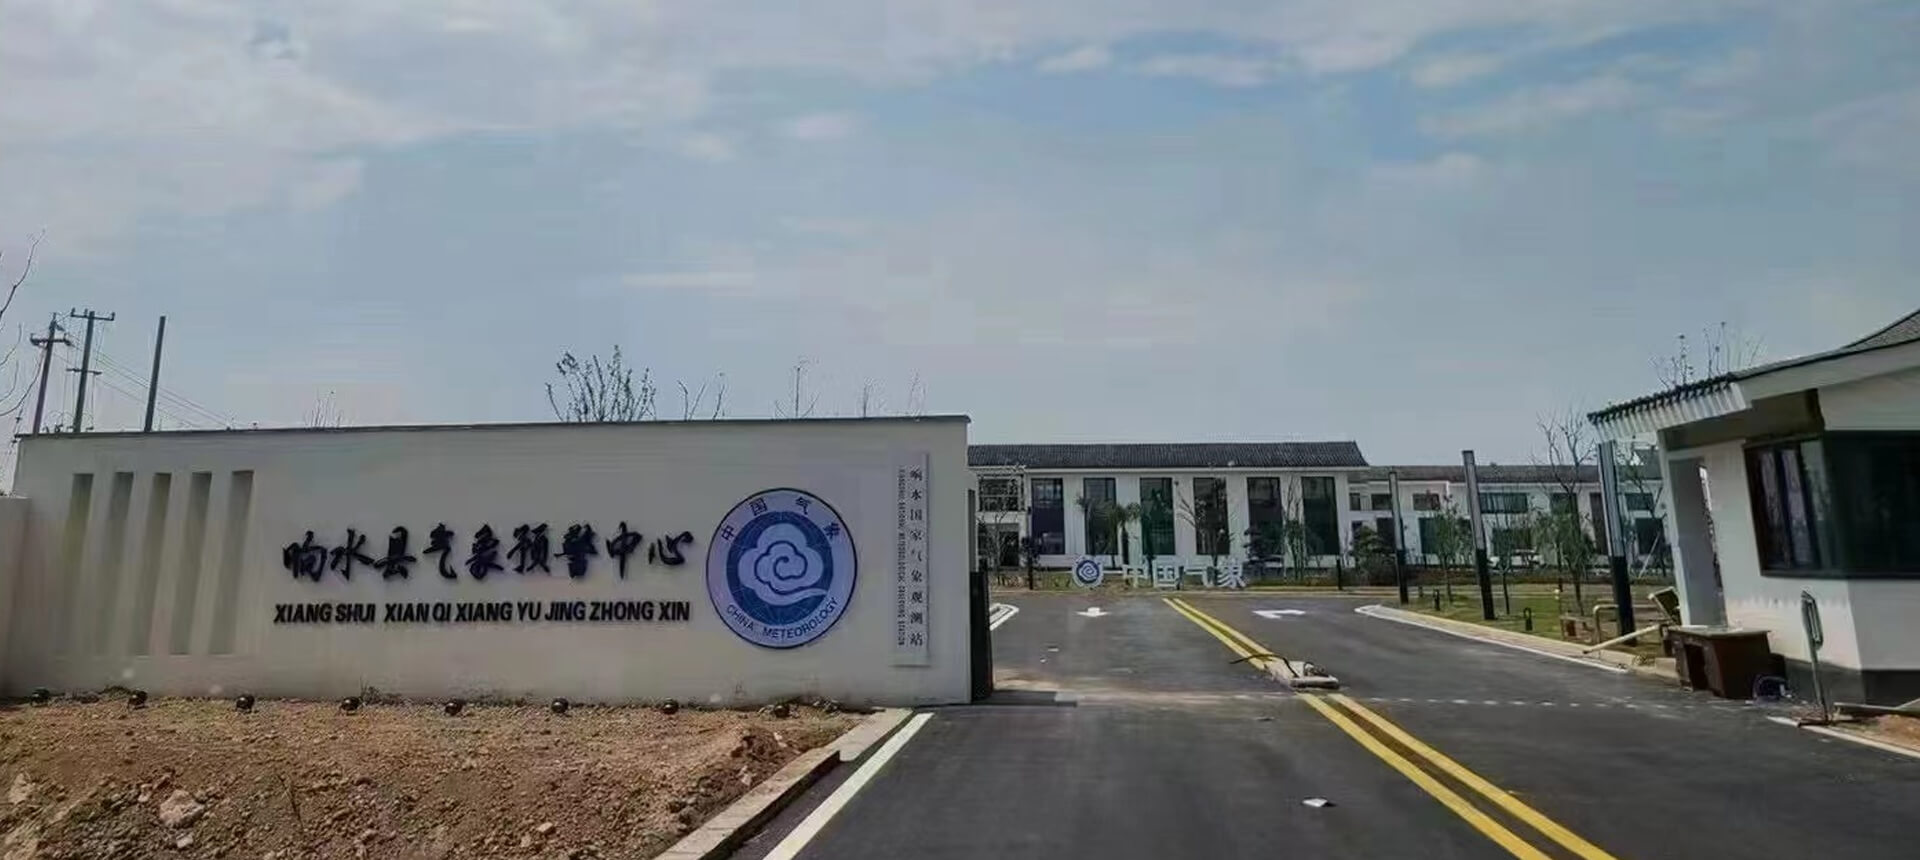 نظام مؤتمرات بدون ورق لأجهزة الأرصاد الجوية الصينية في جيانغسو